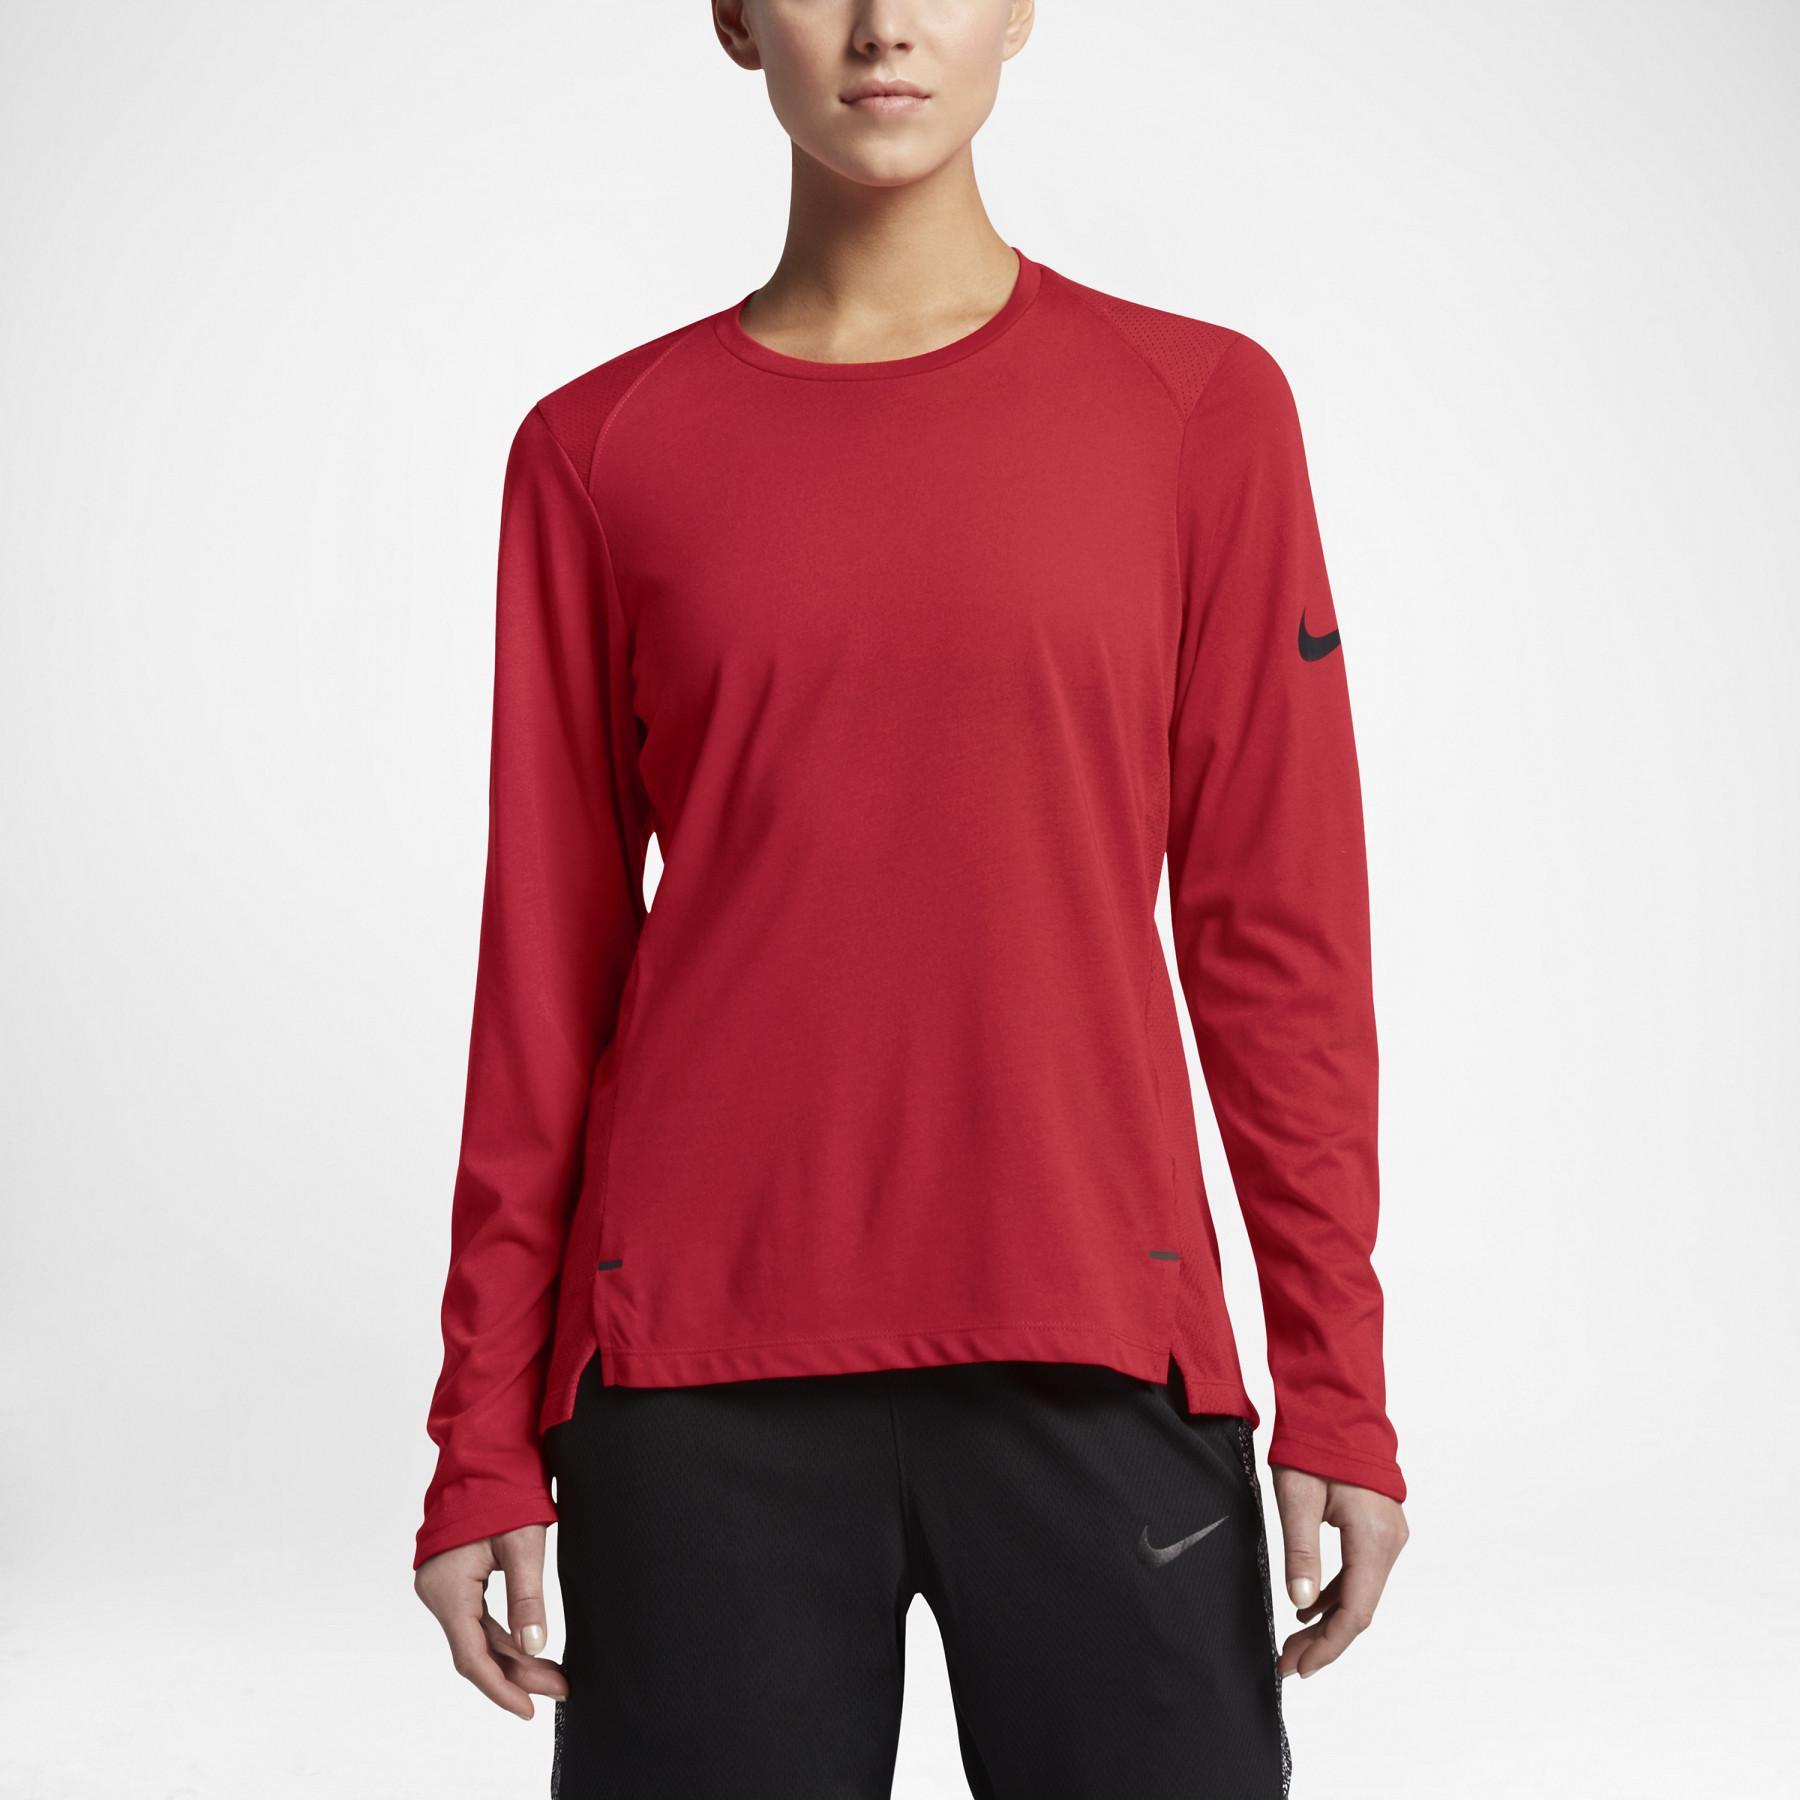 Jersey de manga larga para mujer Nike Dry Elite